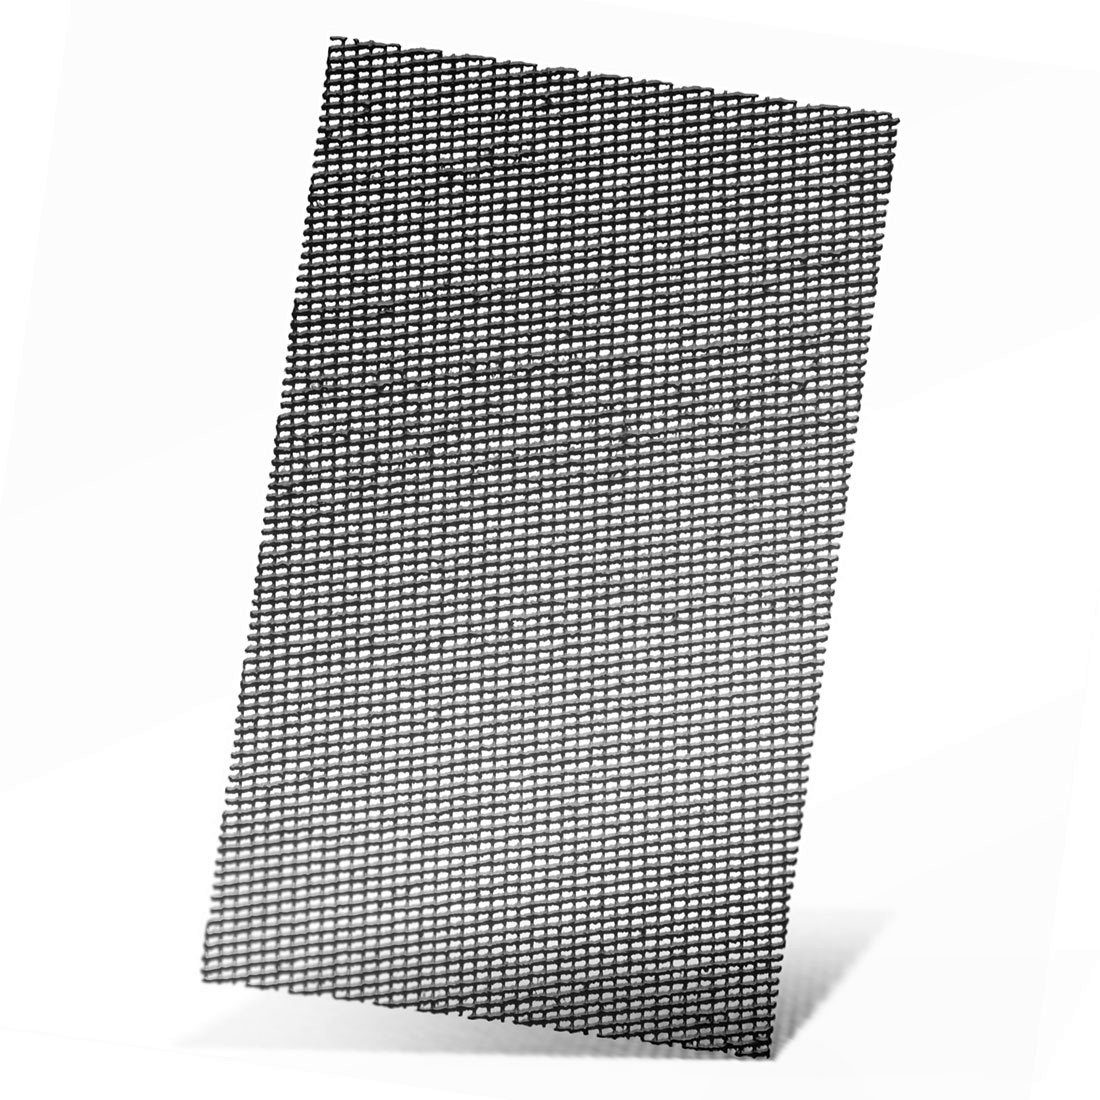 MENZER Schleifpapier 133 x 80 mm Klett-Schleifgitter für Schwingschleifer, Siliciumcarbid, 20 Stk., K60